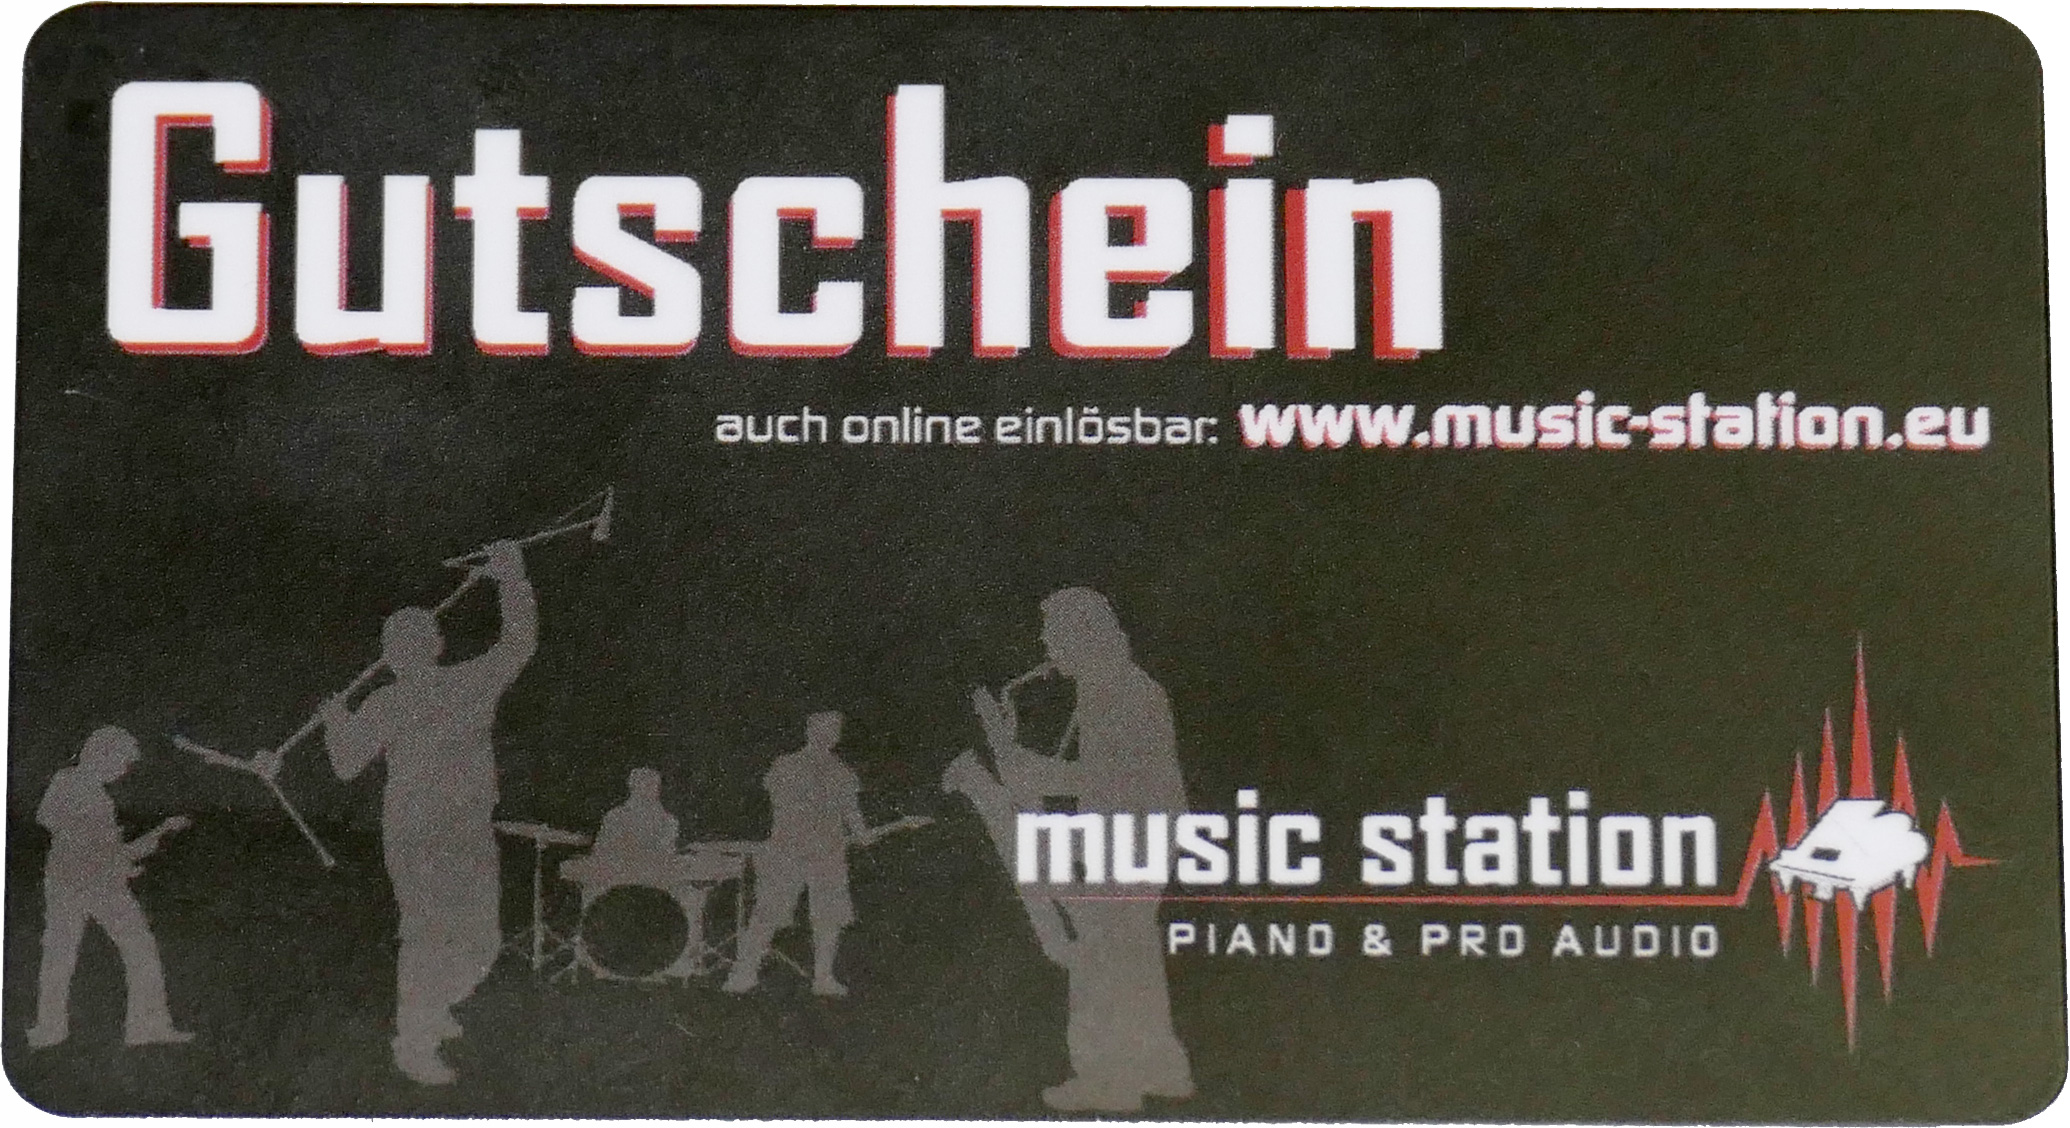 Music Station Gutschein 25 Euro